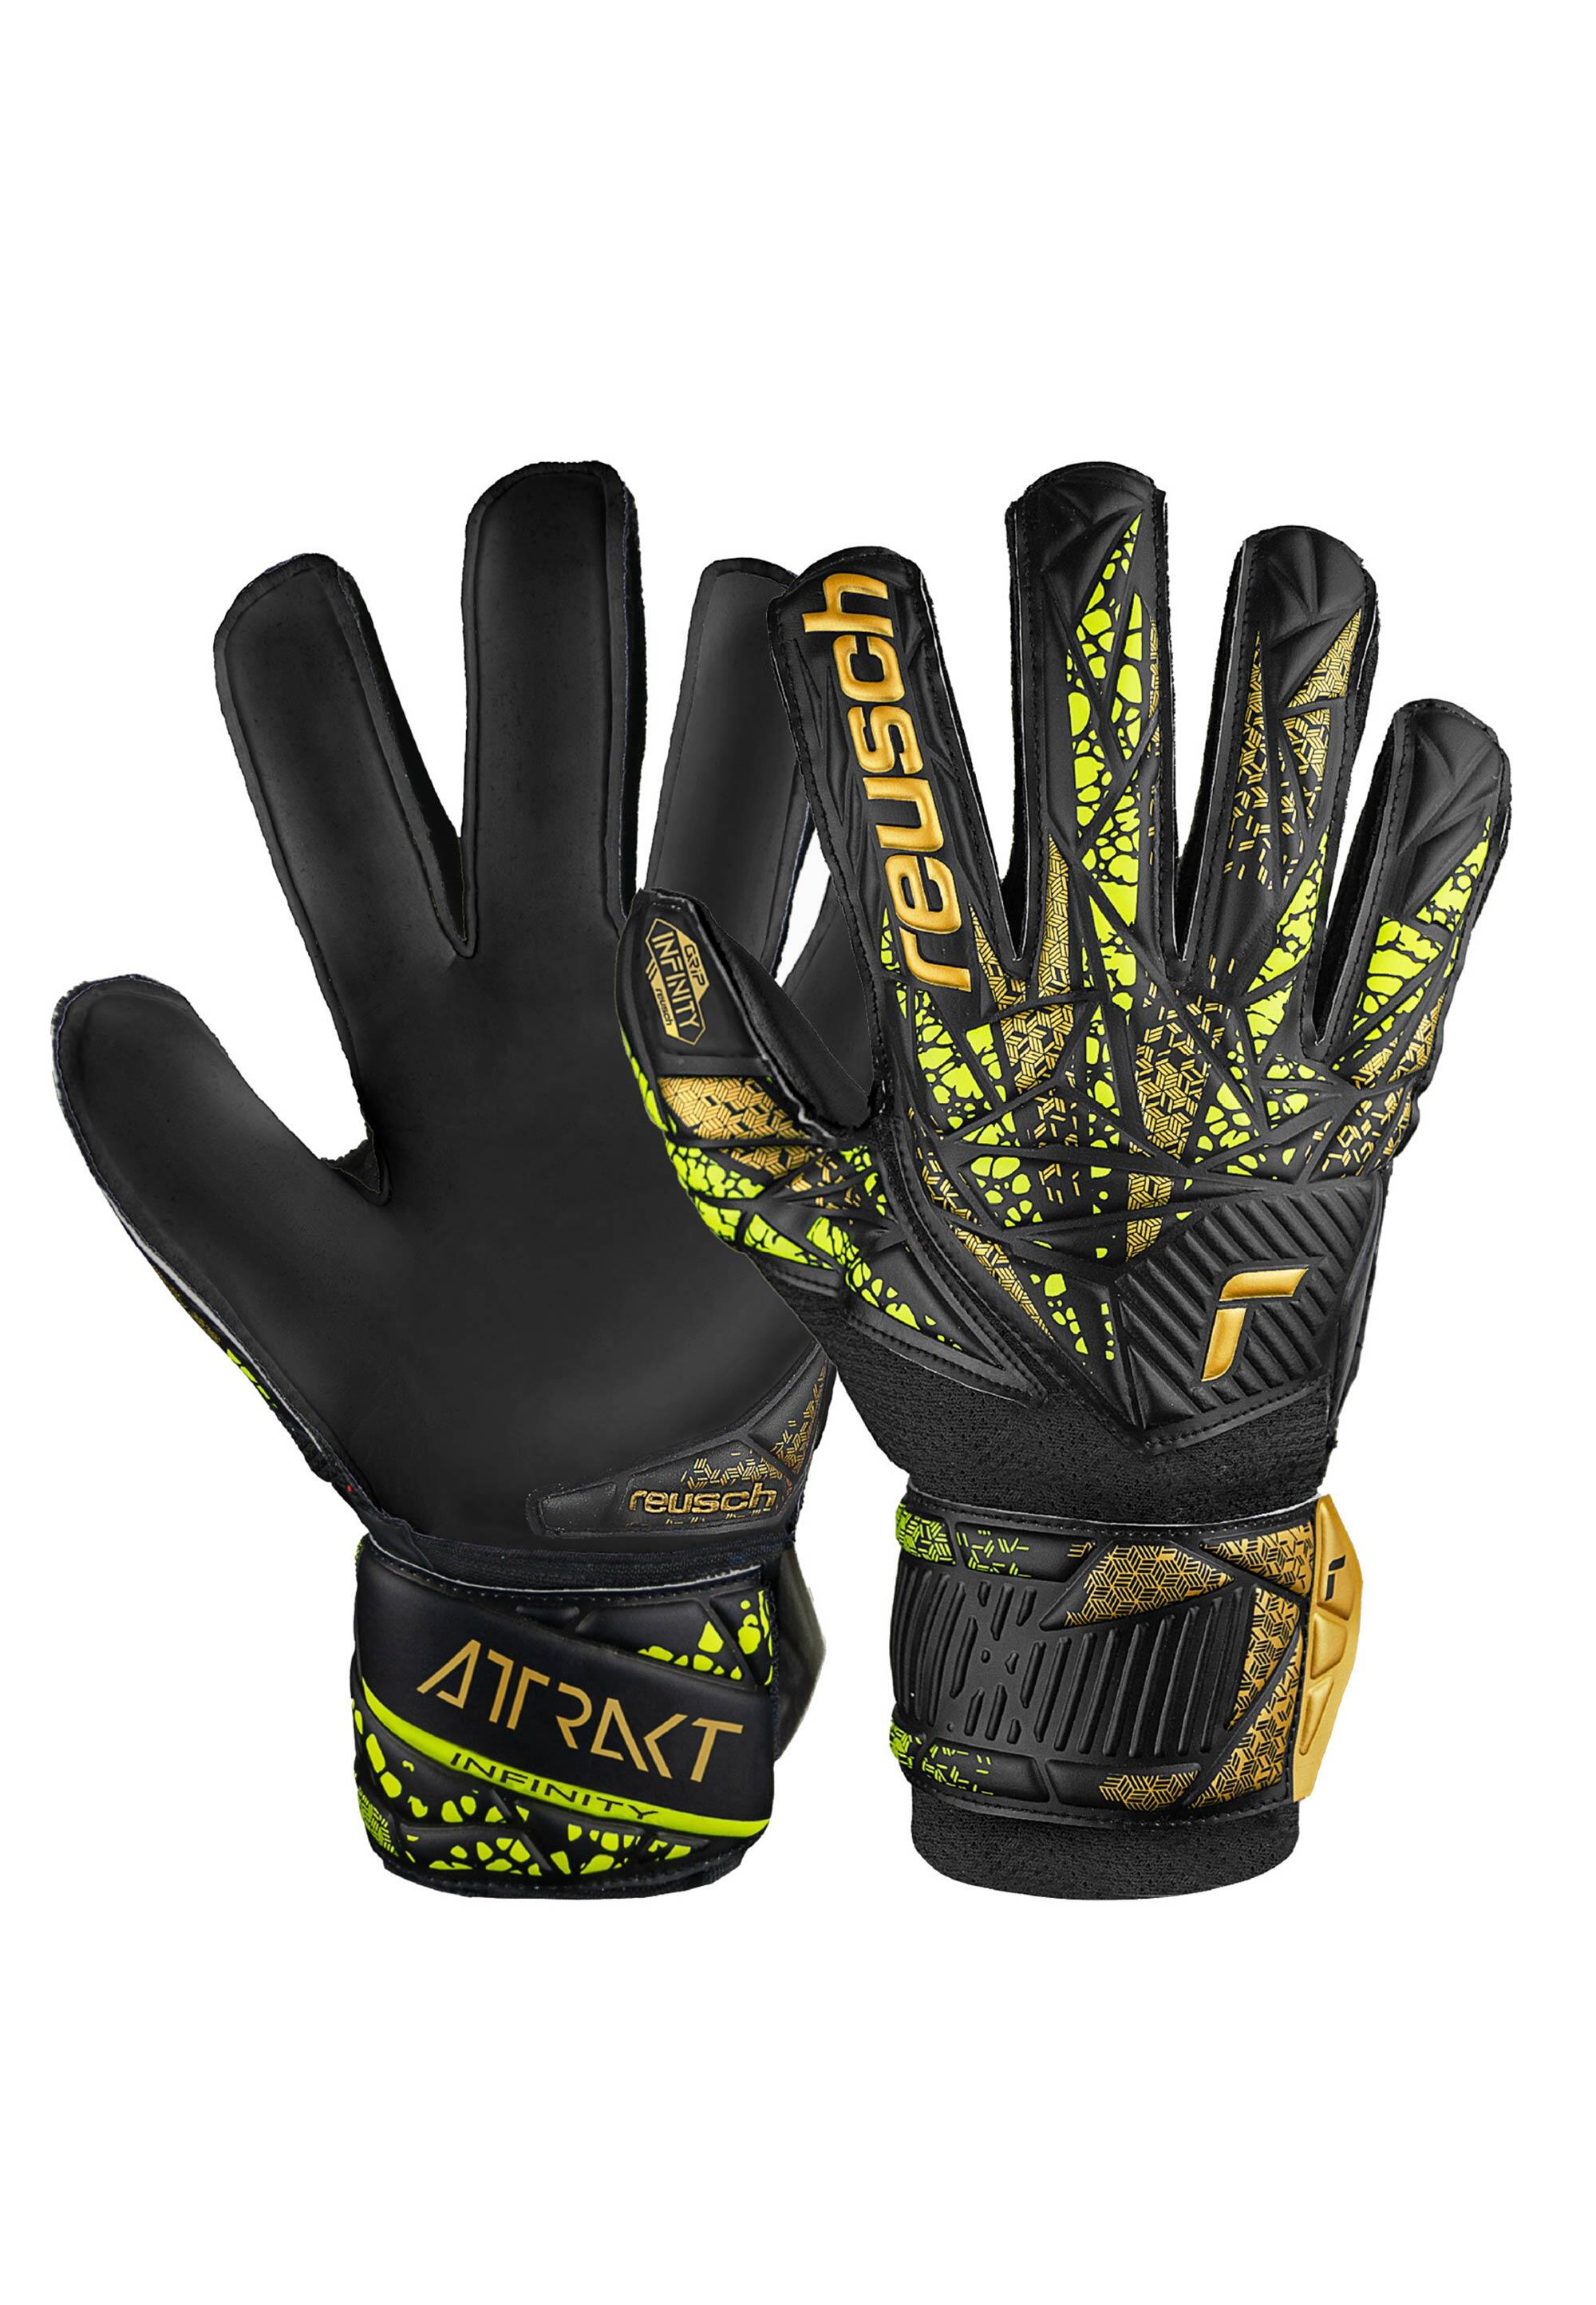 Reusch Attrakt Infinity Finger Support Junior Goalkeeper Gloves 1/7